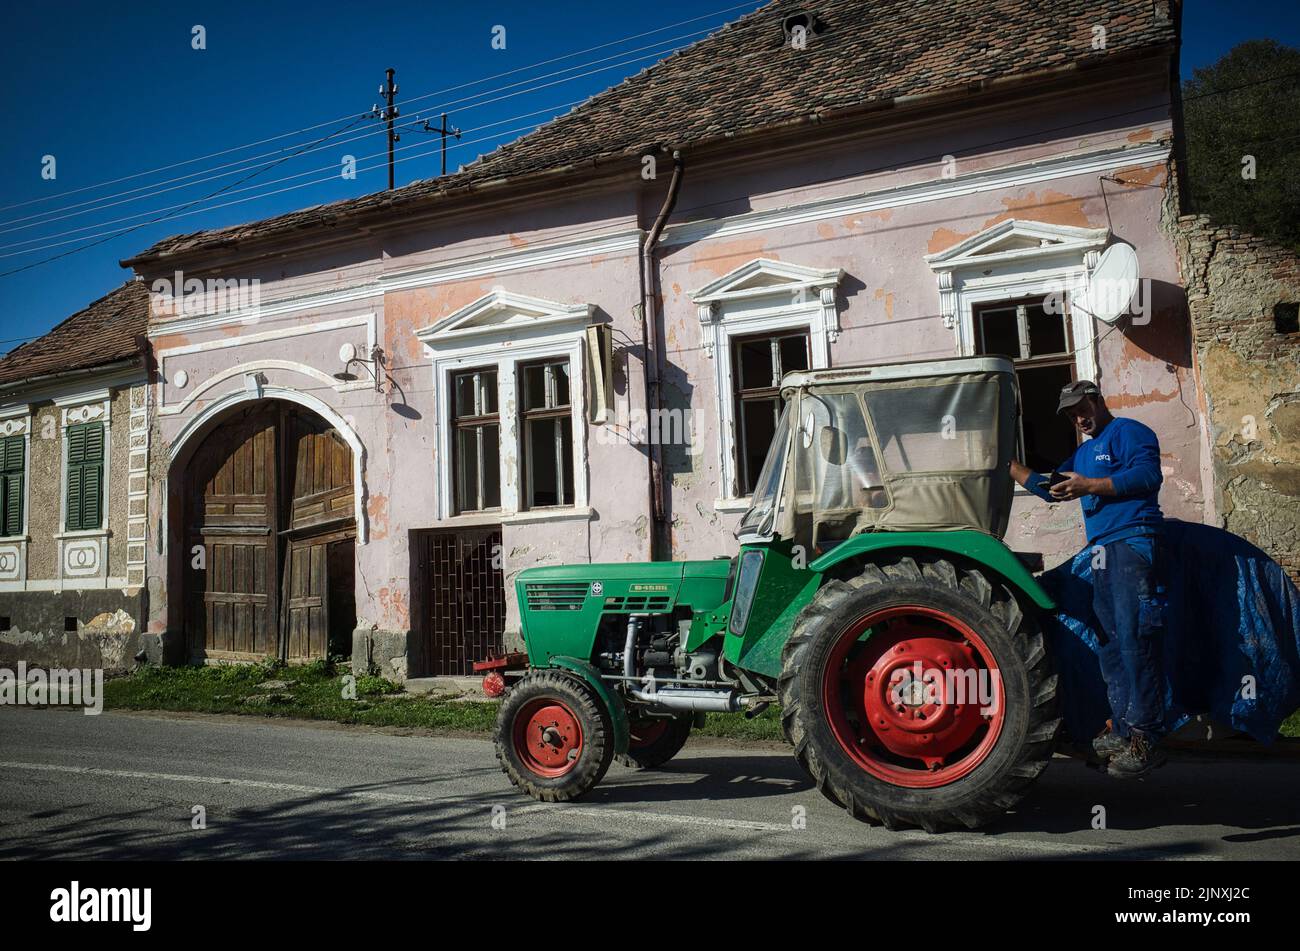 Homme en costume bleu de chaudière envoyant un message texte alors qu'il prend un trajet à la maison sur l'arrière d'un tracteur en Transylvanie Banque D'Images